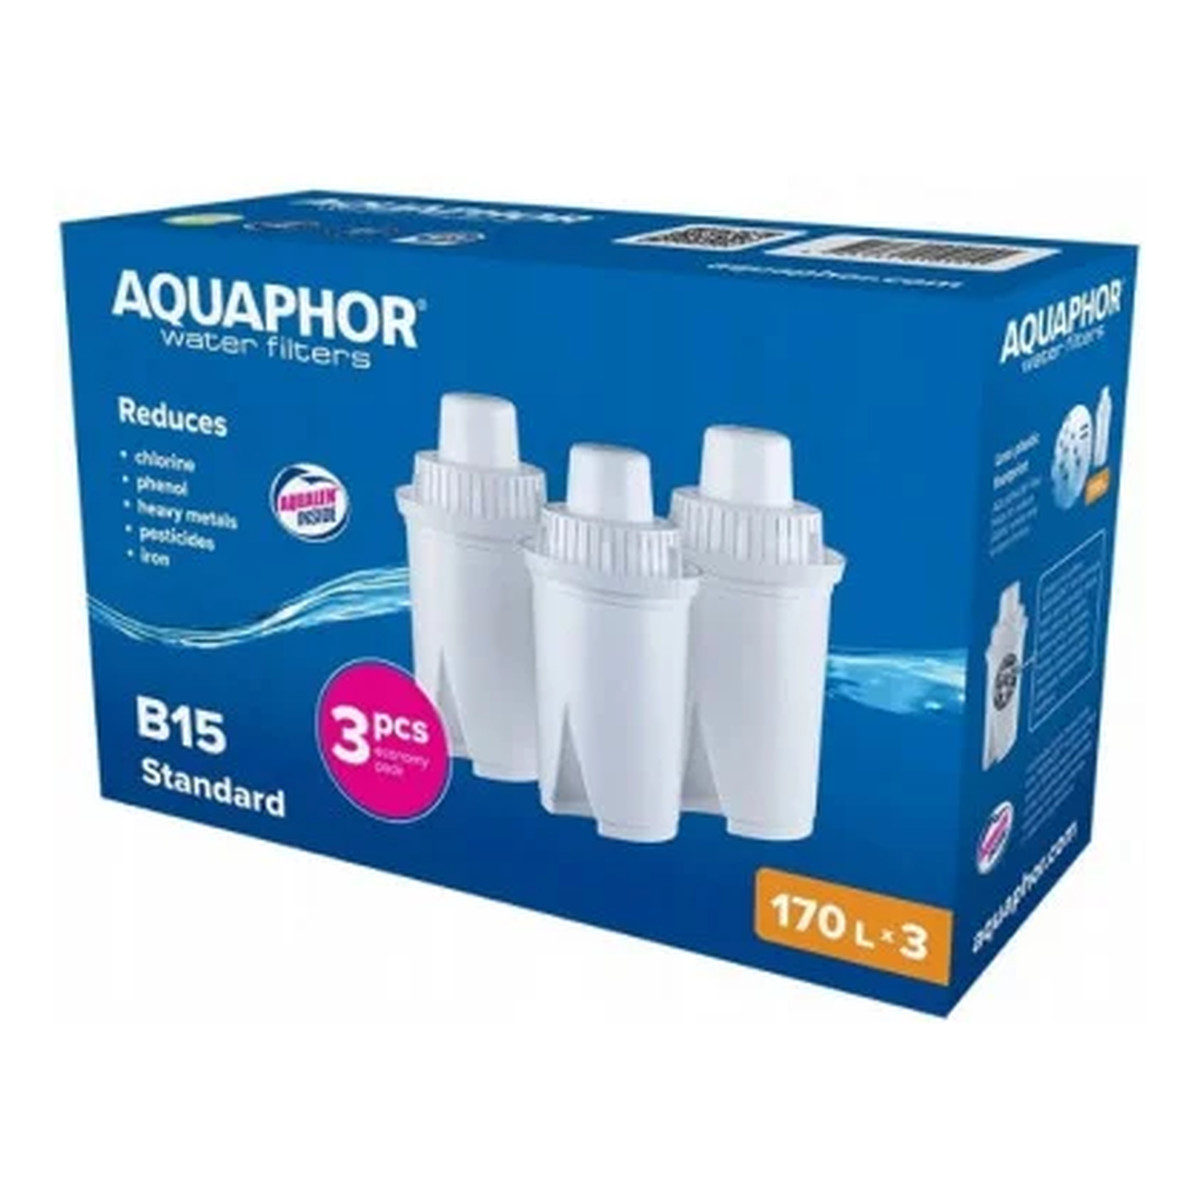 Aquaphor WKŁAD filtrujący DO DZBANKA B15 STANDARD WYDAJNOŚĆ 170L 3sztuki